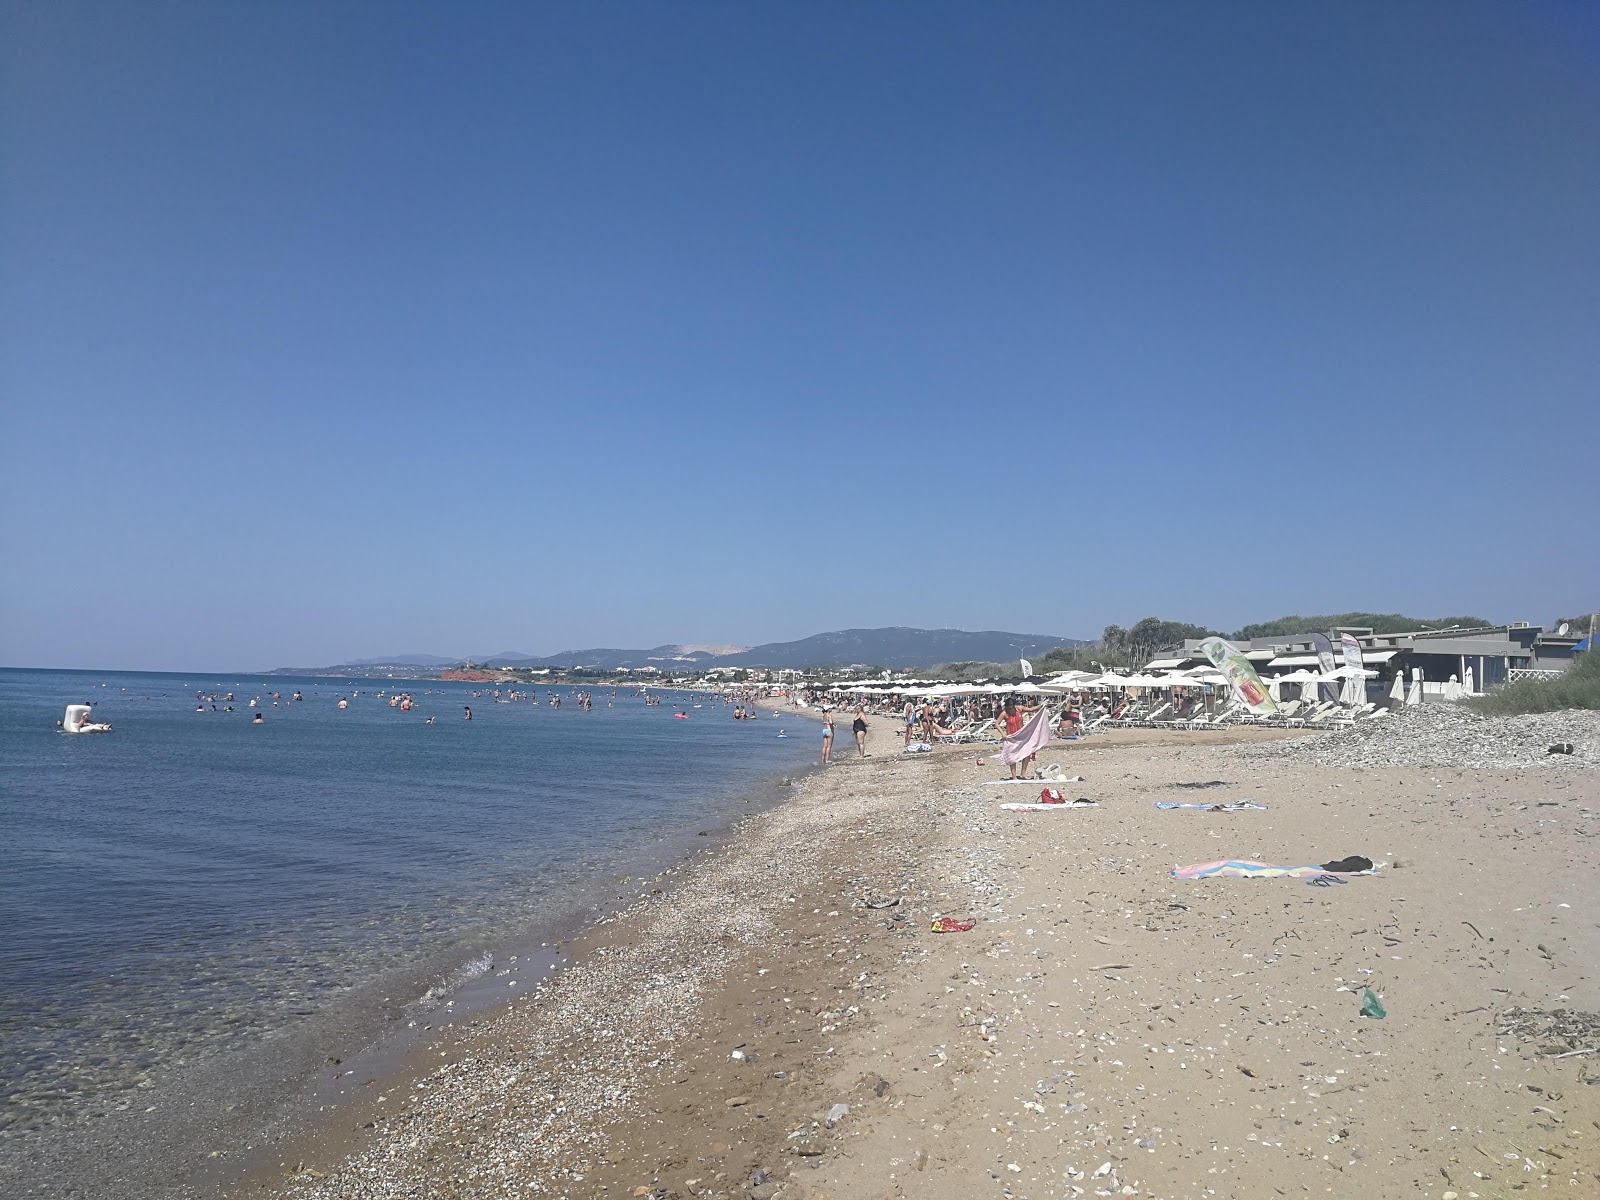 Fotografie cu Alexandroupolis beach - locul popular printre cunoscătorii de relaxare